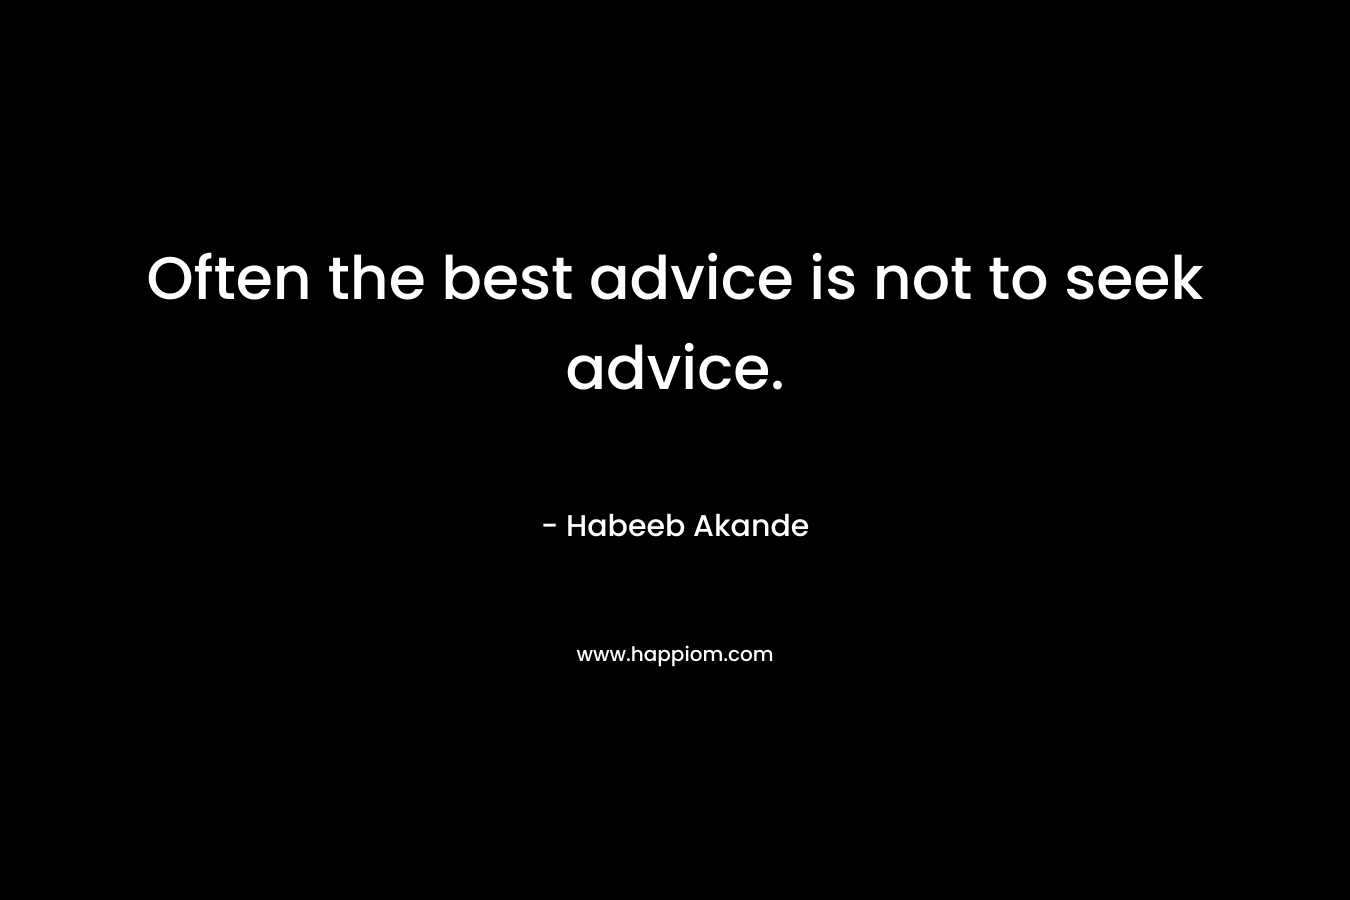 Often the best advice is not to seek advice.